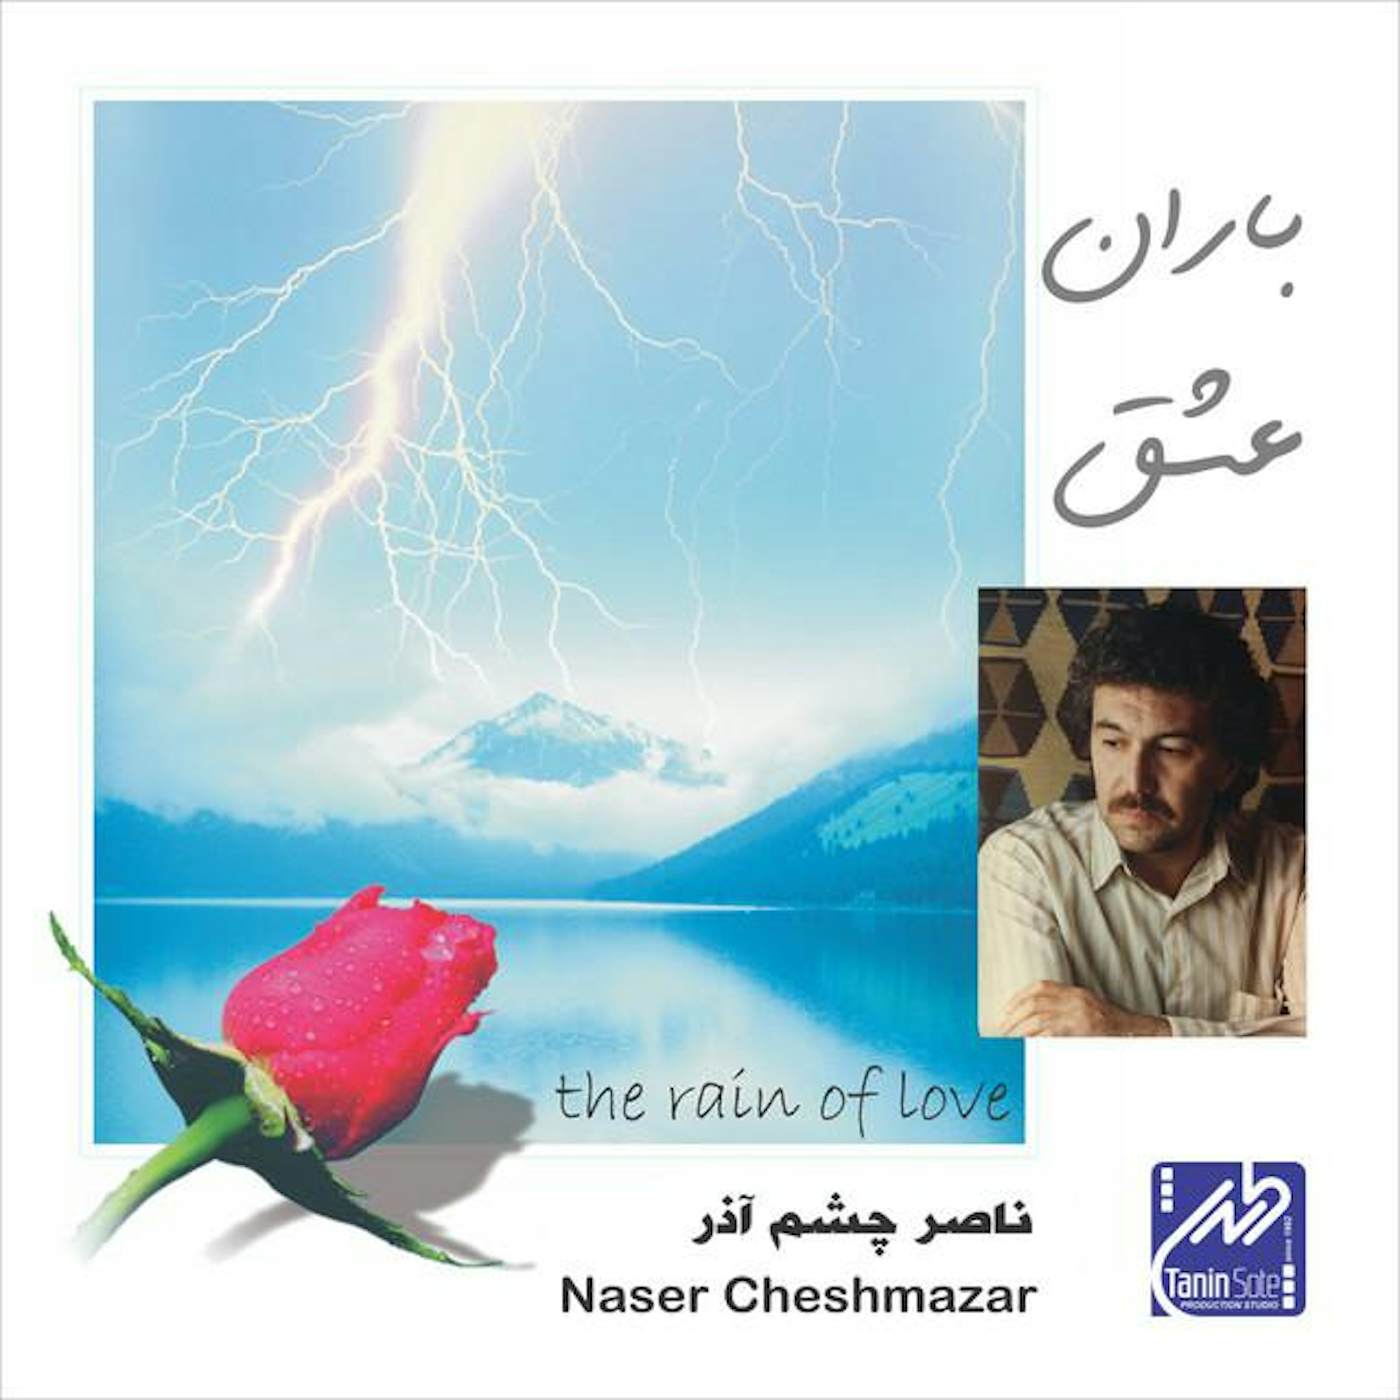 Naser Cheshmazar